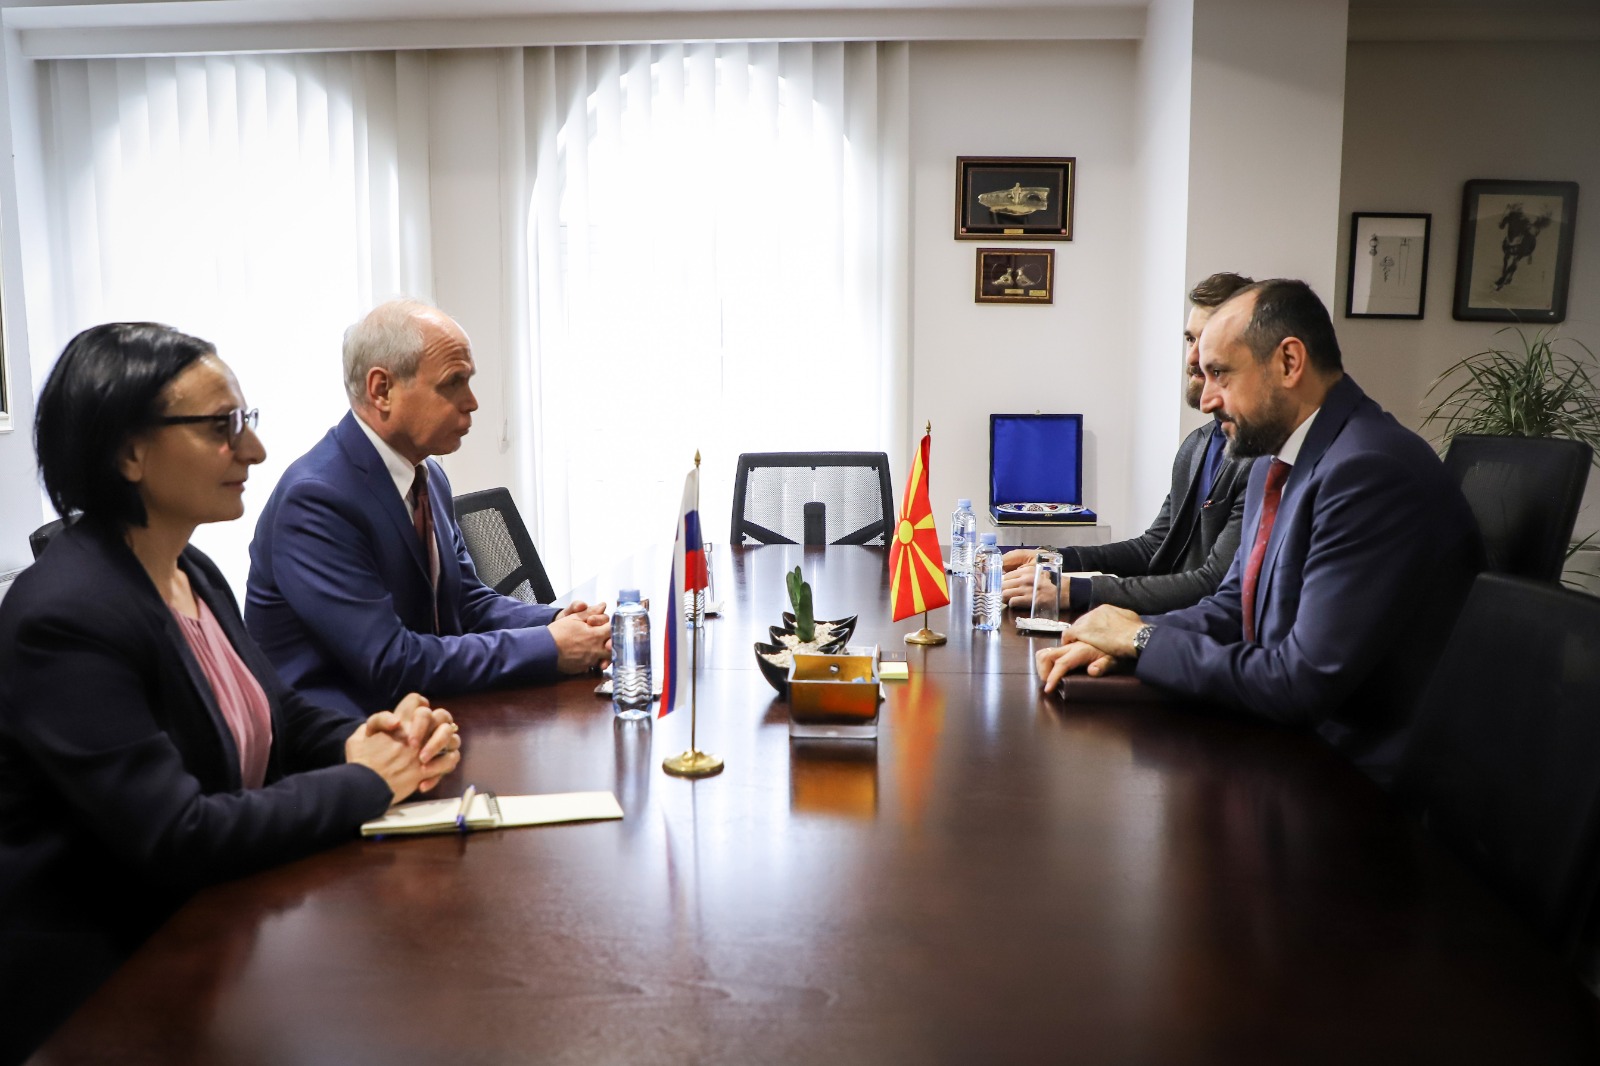 Zëvendëskryeministri Bytyqi ka zhvilluar një takim me ambasadorin në largim të Republikës së Sllovenisë Milan Predan